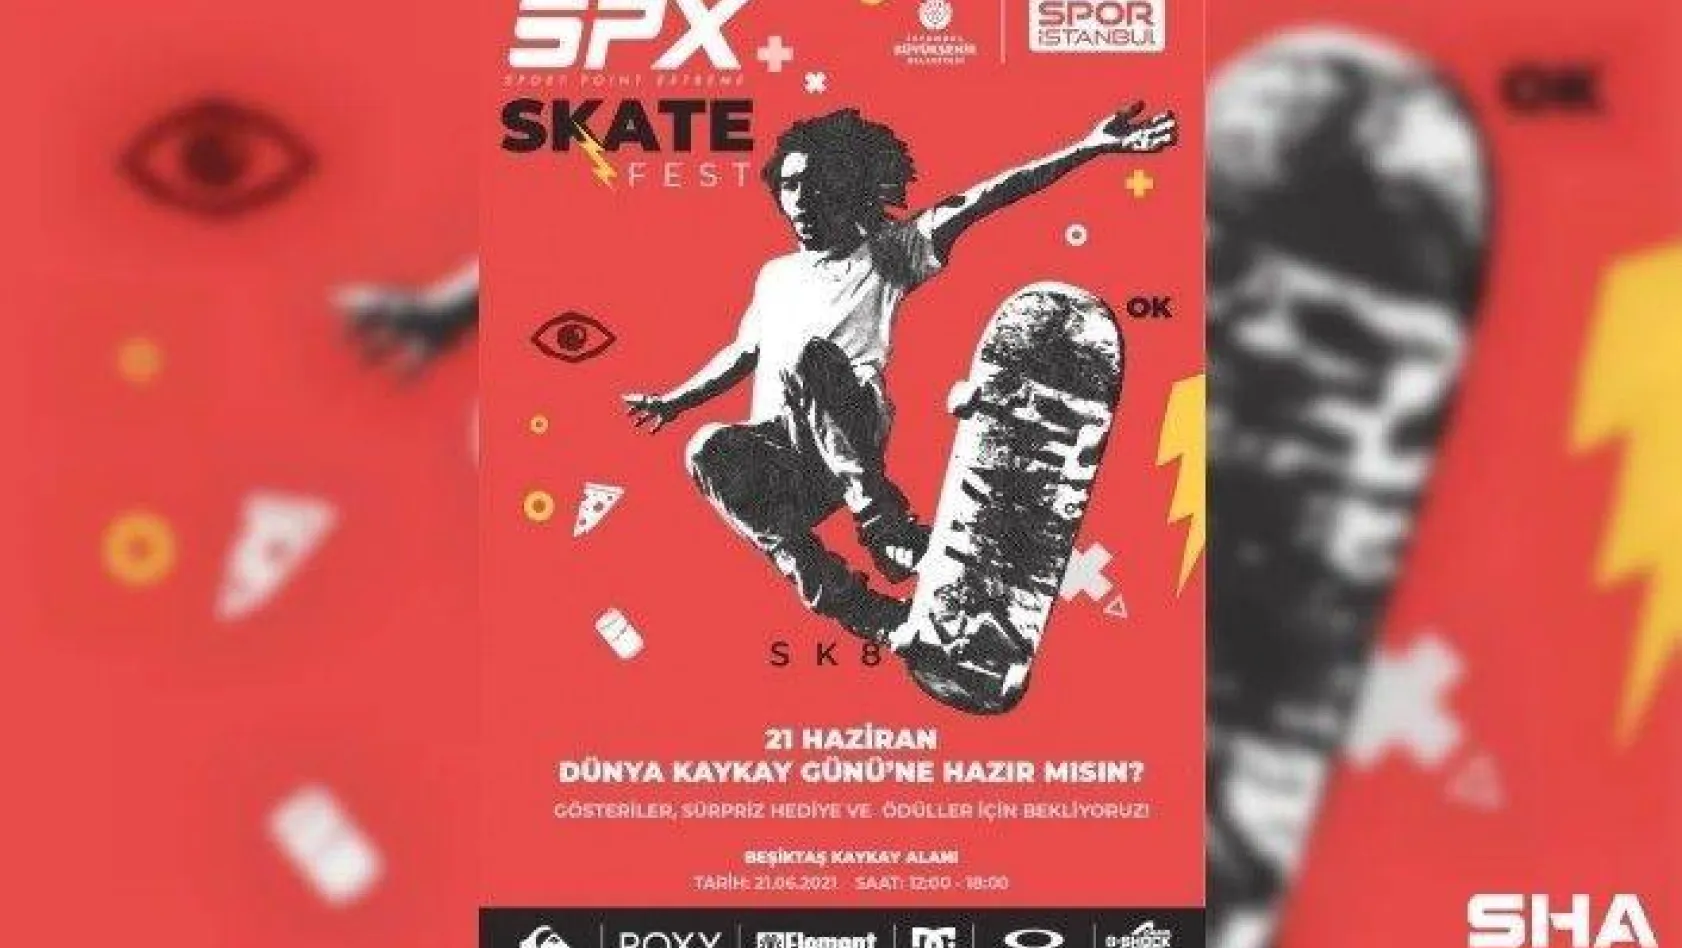 21 Haziran Dünya Kaykay Günü, SPX Skate Fest'te kutlanacak